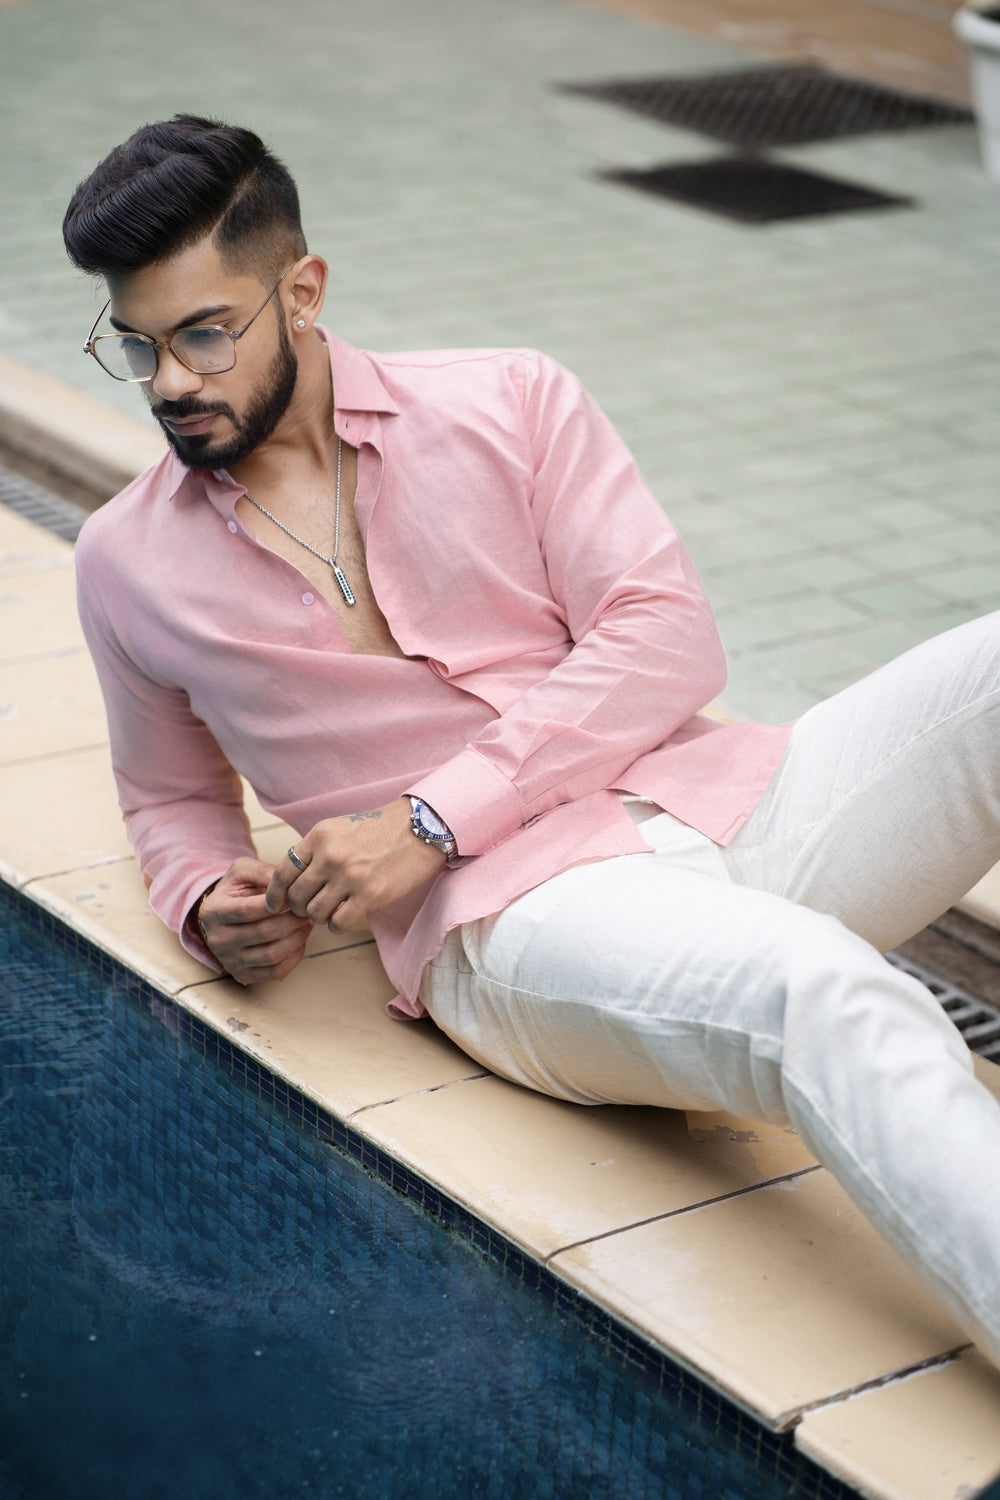 Classic Pink Linen Shirt